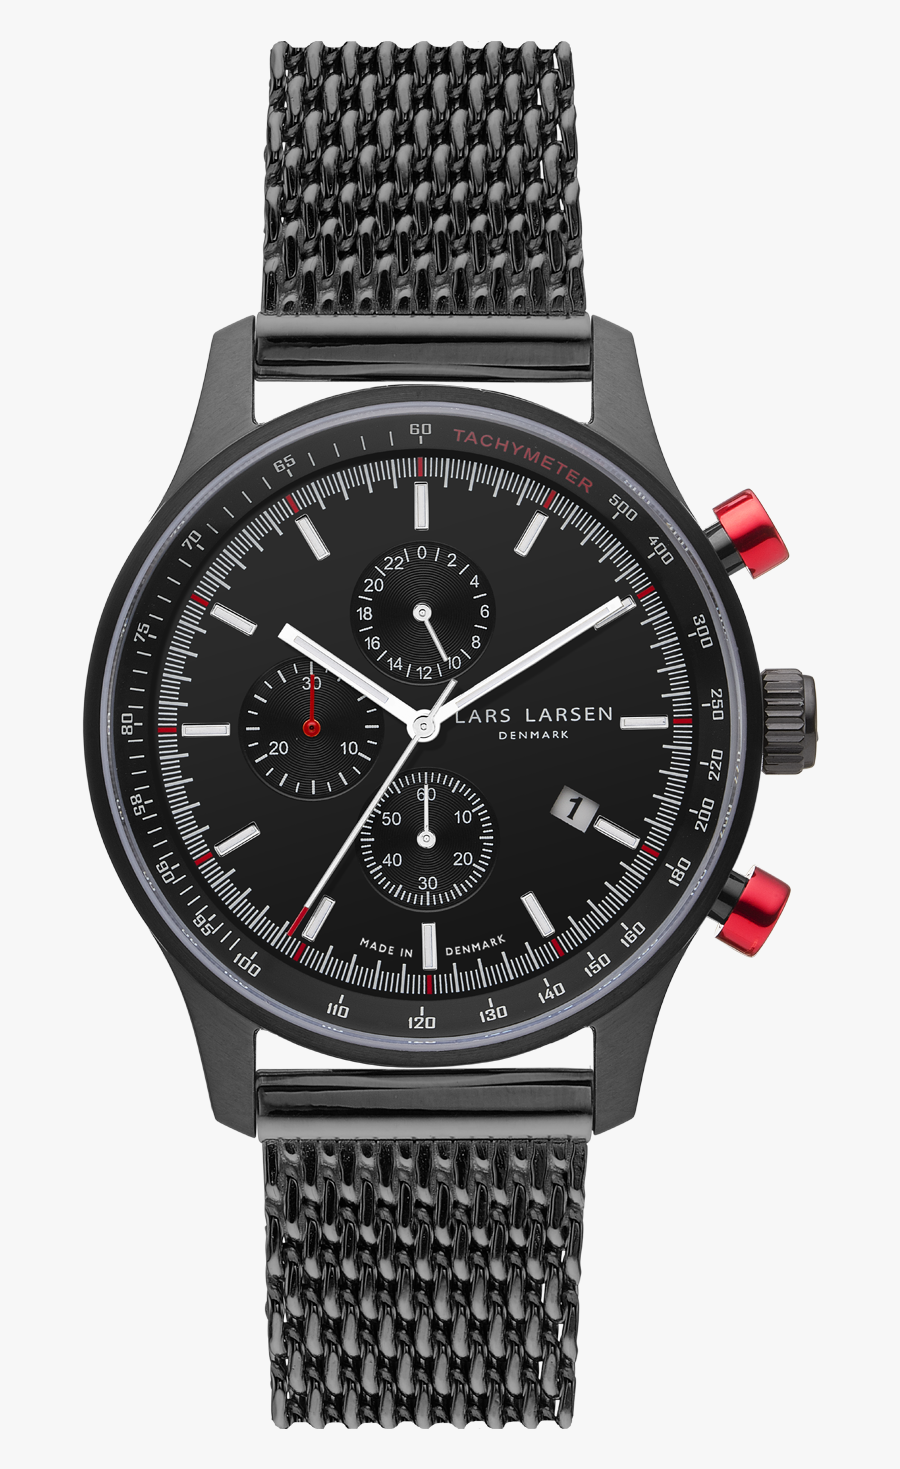 Clipart Royalty Free Transparent Watches Vincent - Porsche Design Lemania Chronograph, Transparent Clipart